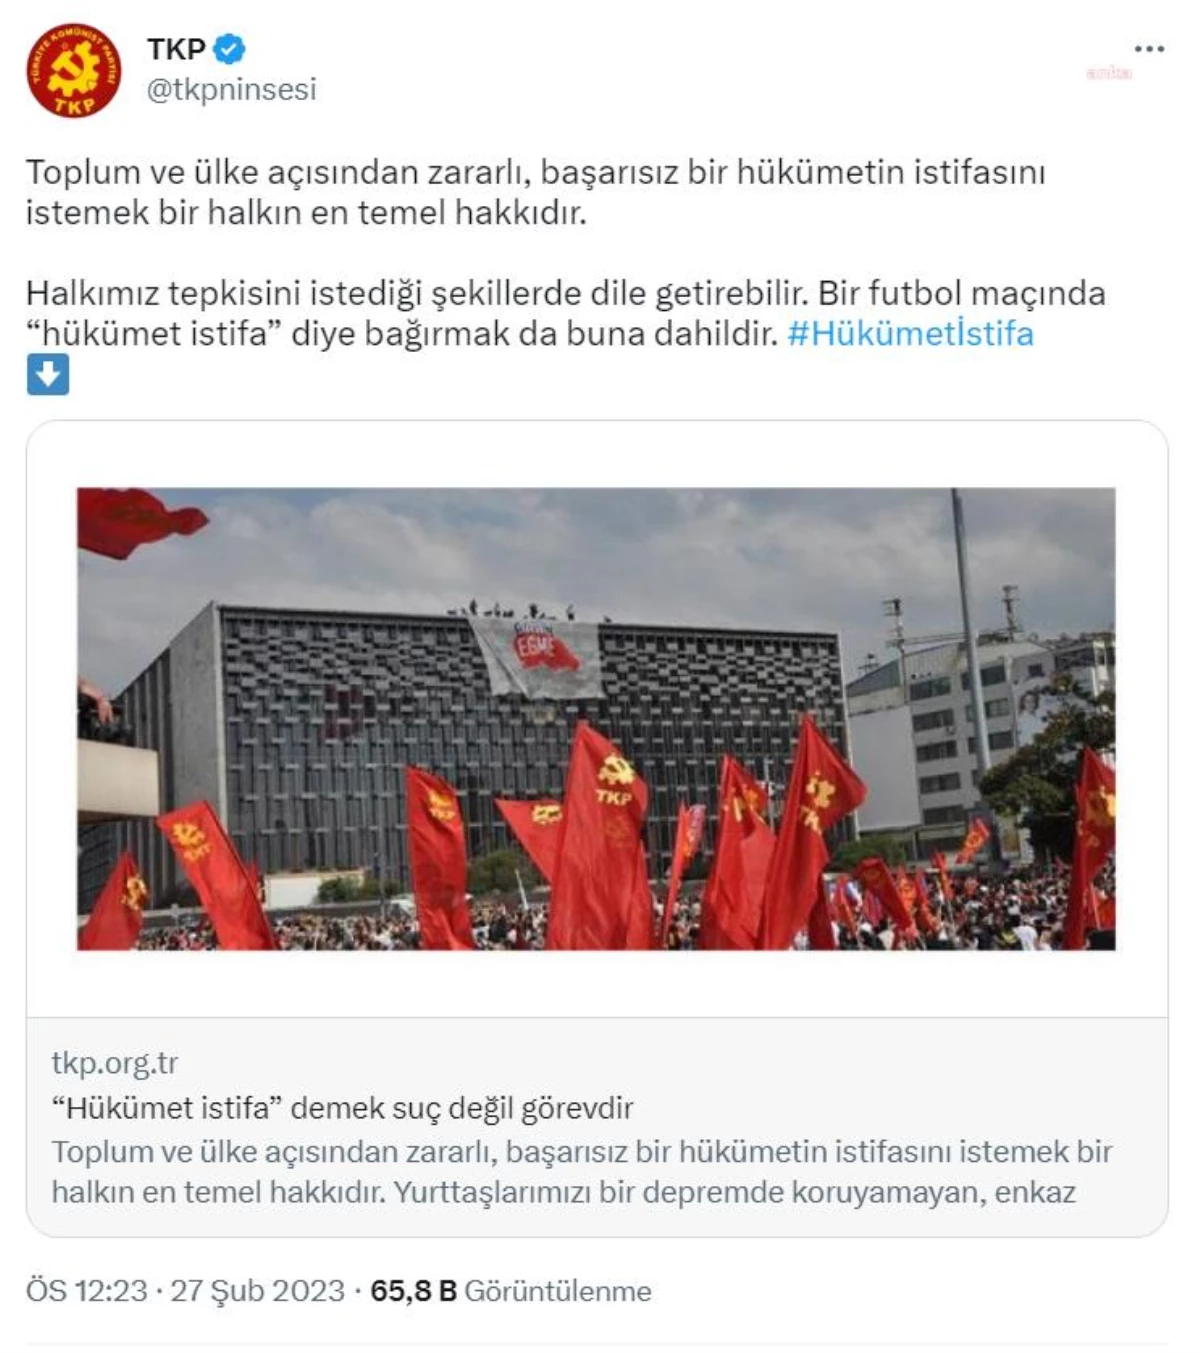 Türkiye Komünist Partisi: "Tkp \'Hükümet İstifa\' Sloganının Bir Suça Dönüştürülmesini Hiçbir Biçimde Kabul Edemez"